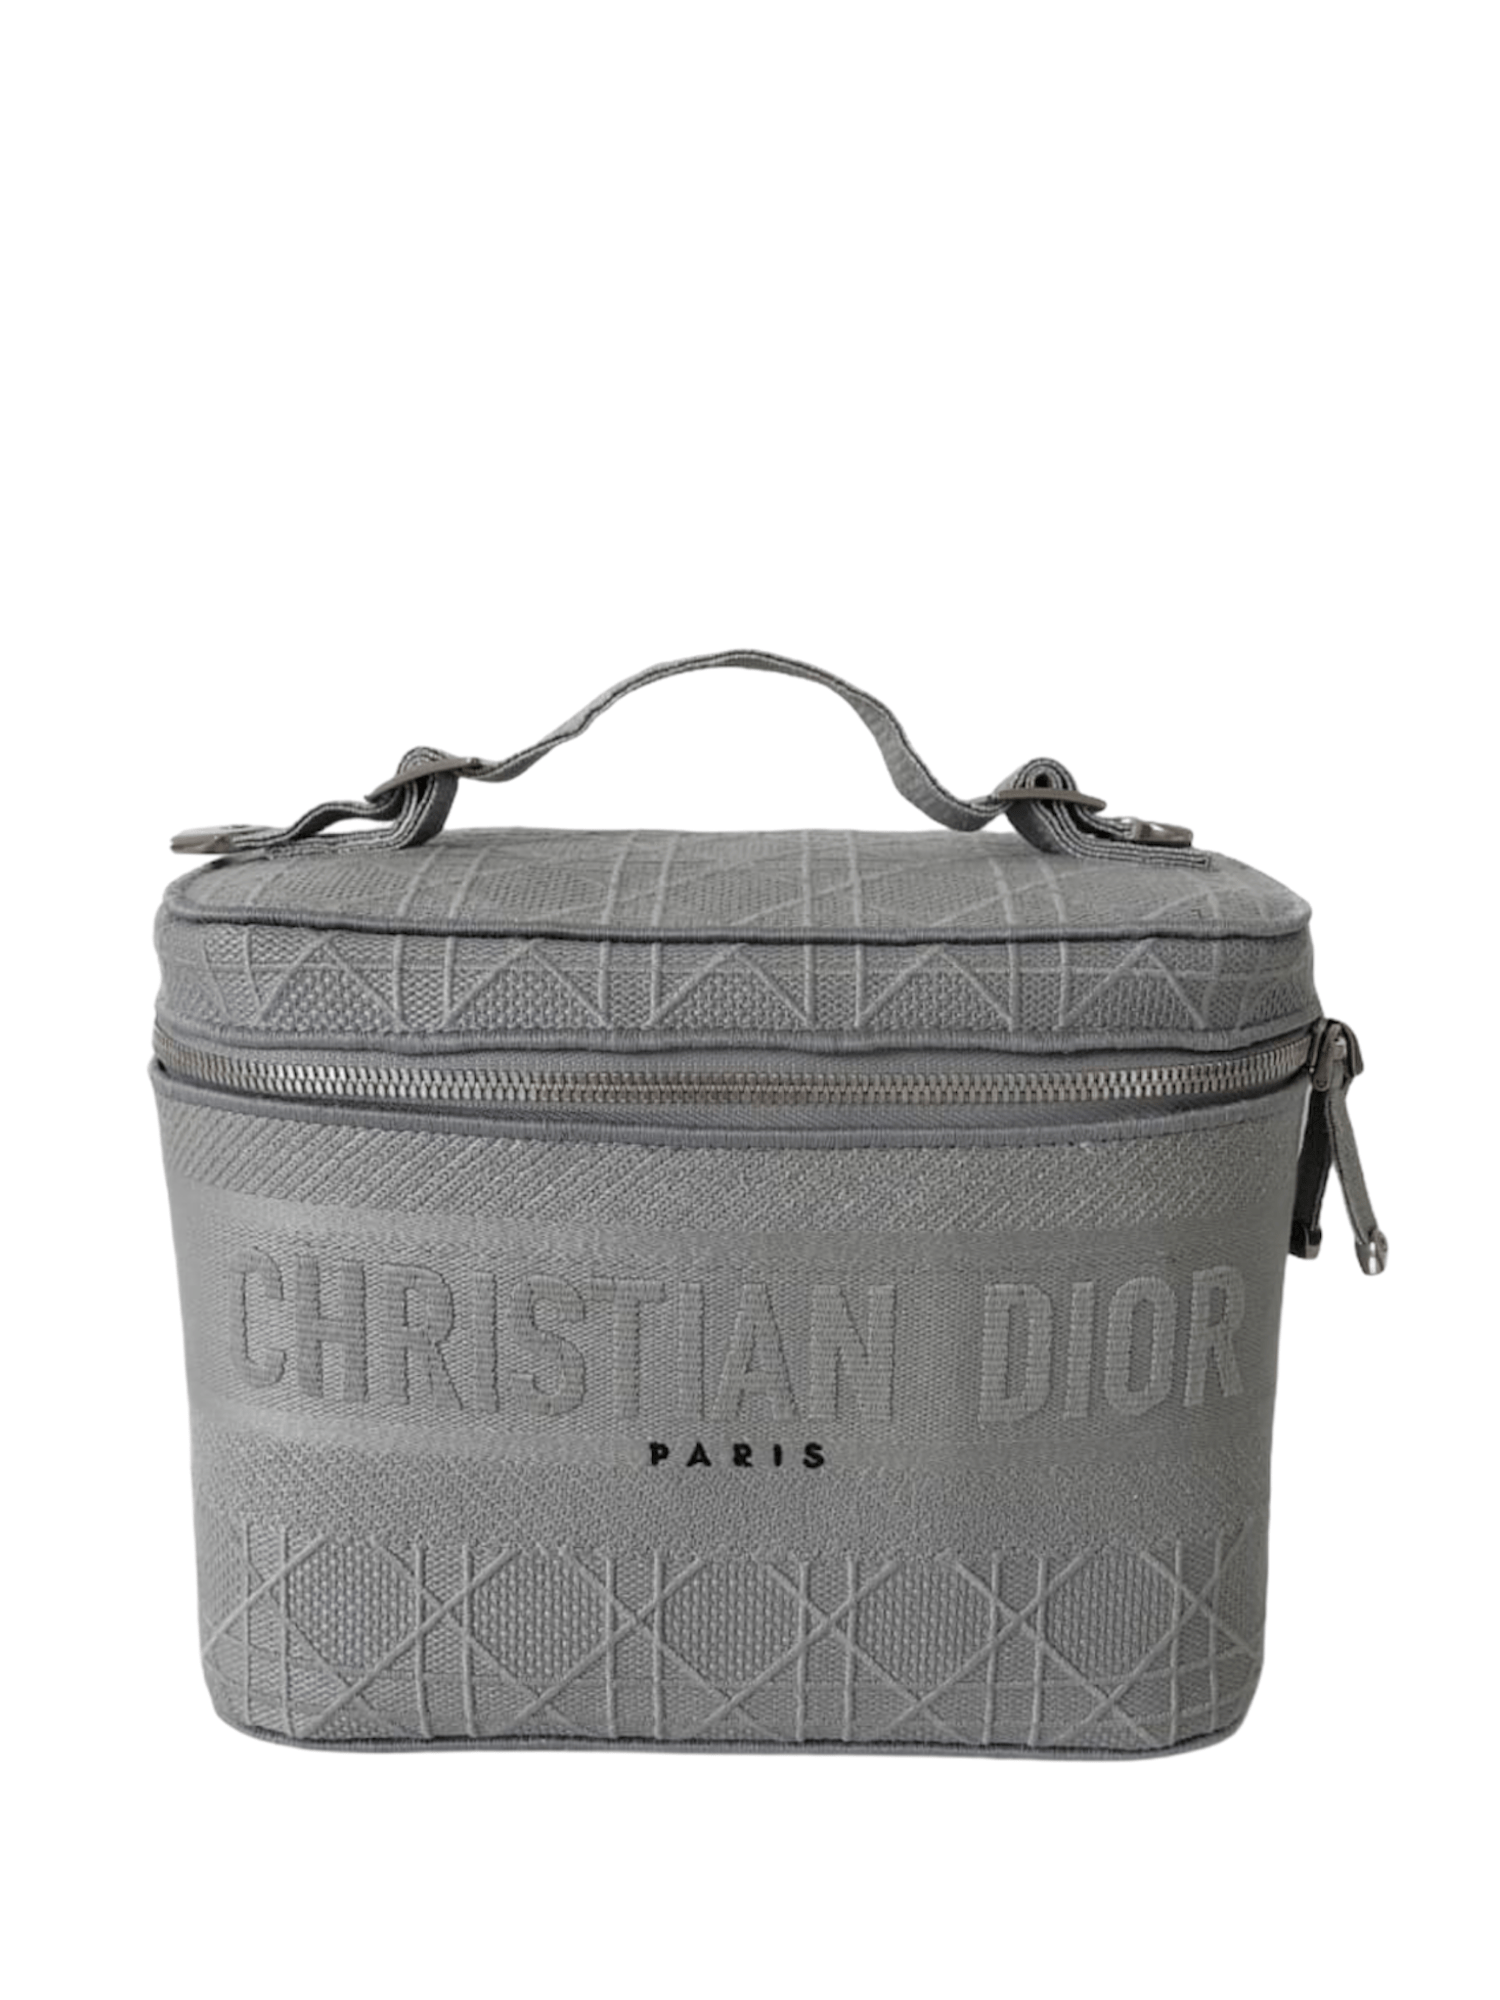 Dior Vanity Box 2020 Grey